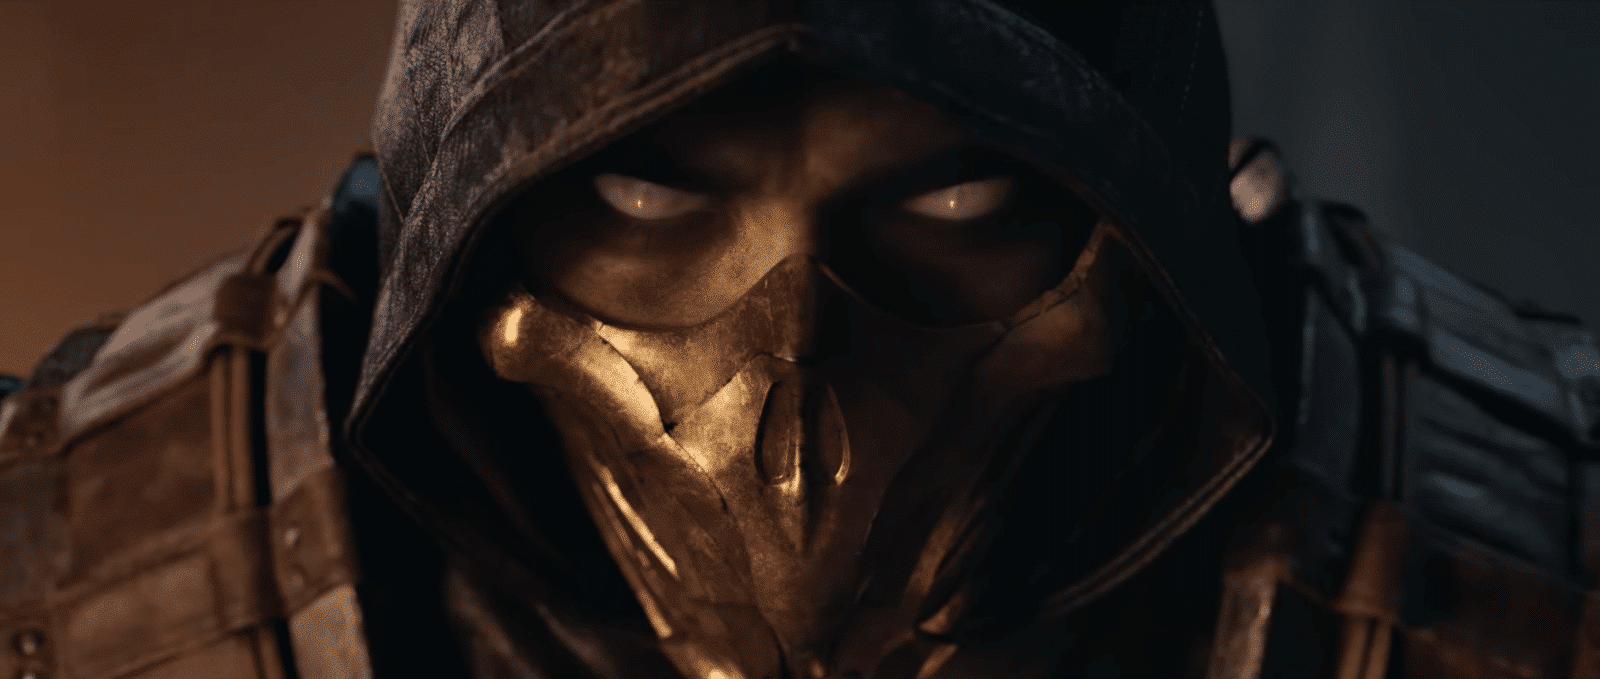 Film Mortal Kombat bude obsahovat reálnější znázornění násilí než ve hrách